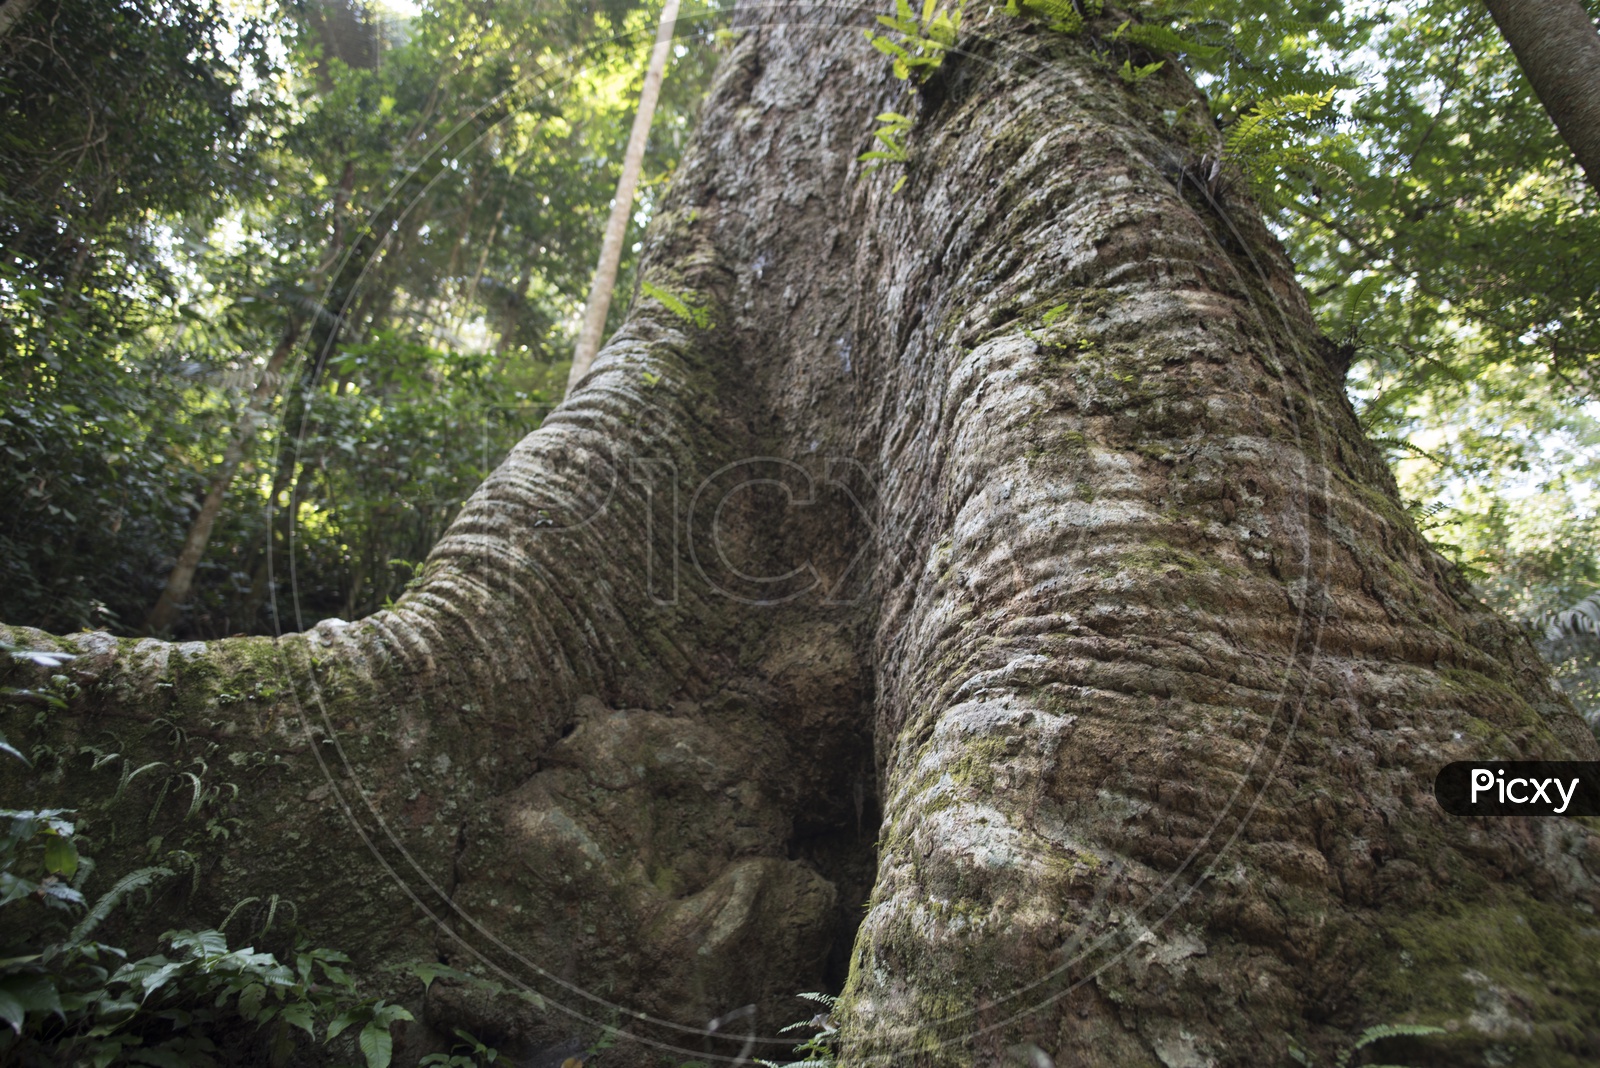 big tree trunk